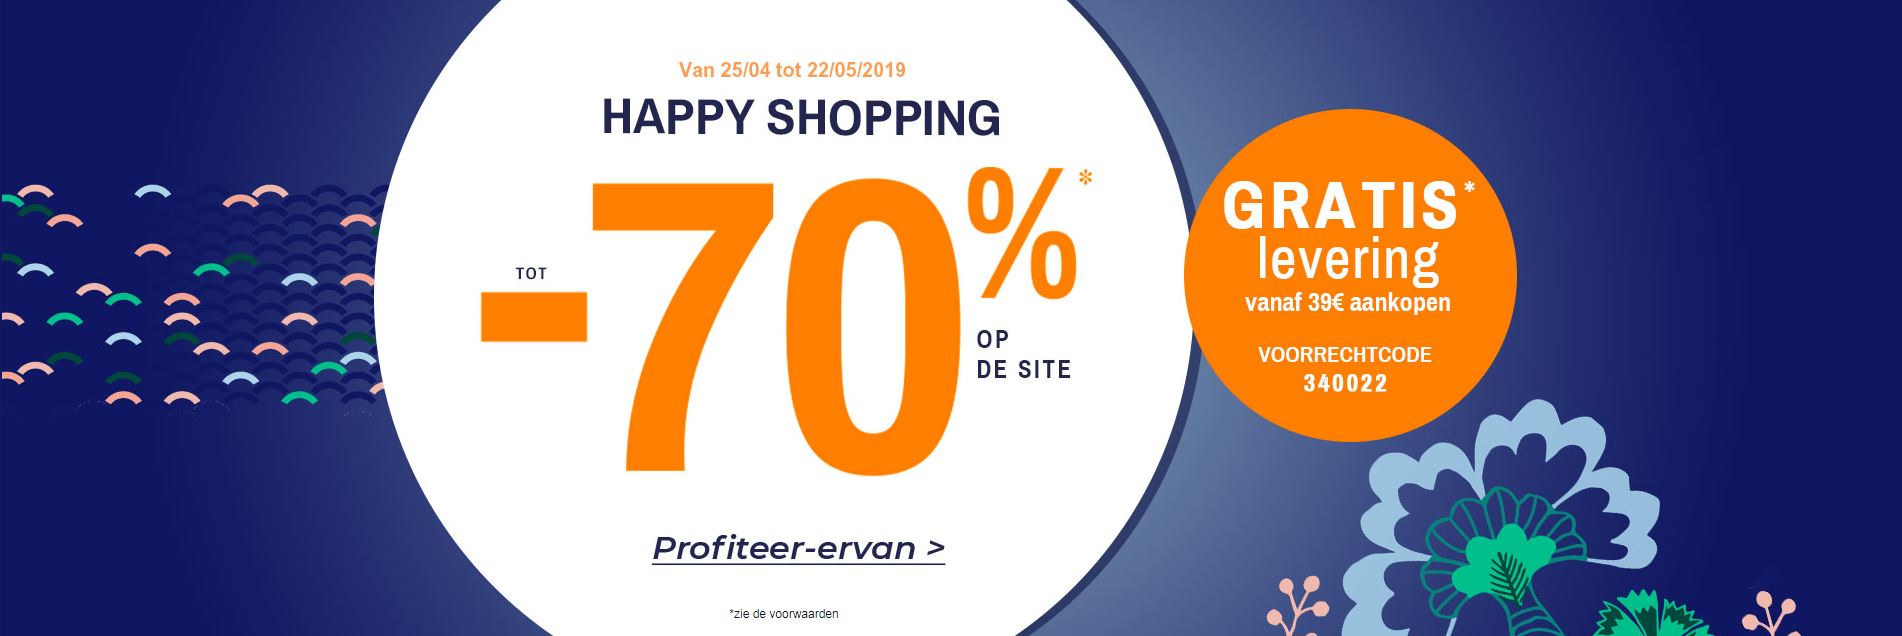 Happy Shopping bij Blancheporte: tot 70% korting op de site!